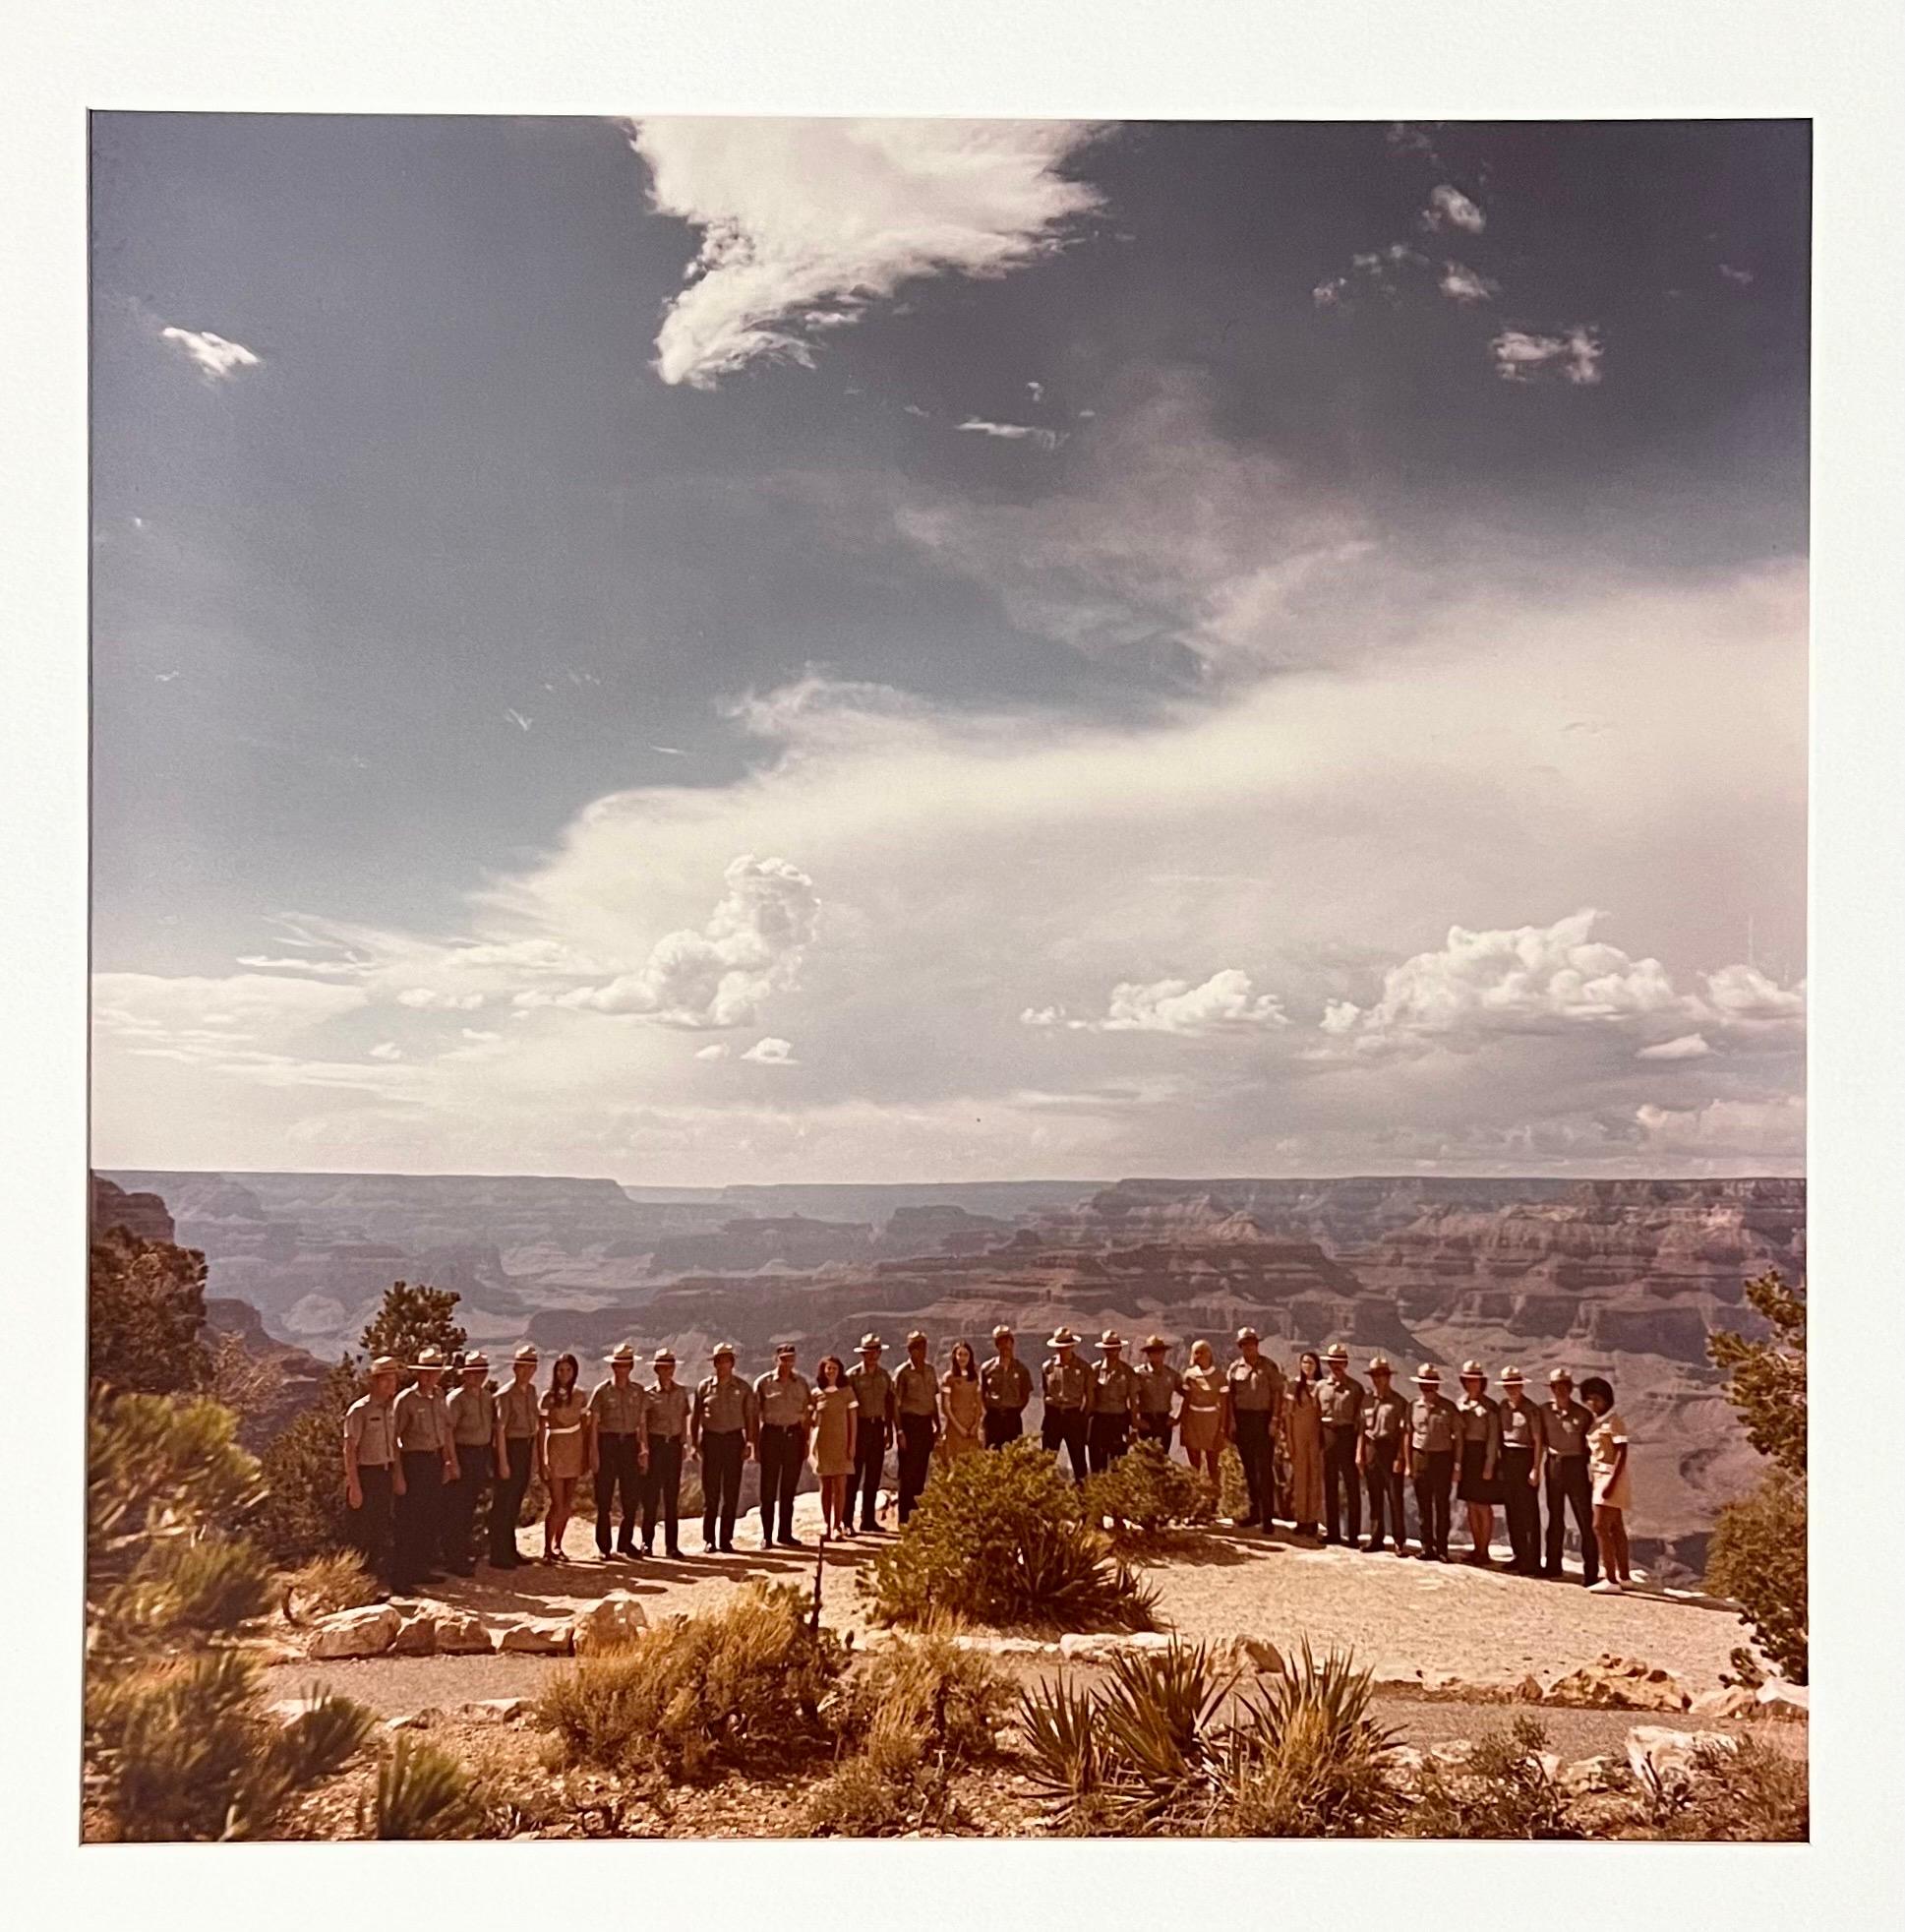 Neal Slavin (Américain, né en 1941)
Service du parc national du Grand Canyon, Arizona
Vintage C-print [Tirage à développement chromogène ; tirages Ektacolor].
Signé et numéroté à la main par le photographe 48/75
Photos réalisées avec un appareil